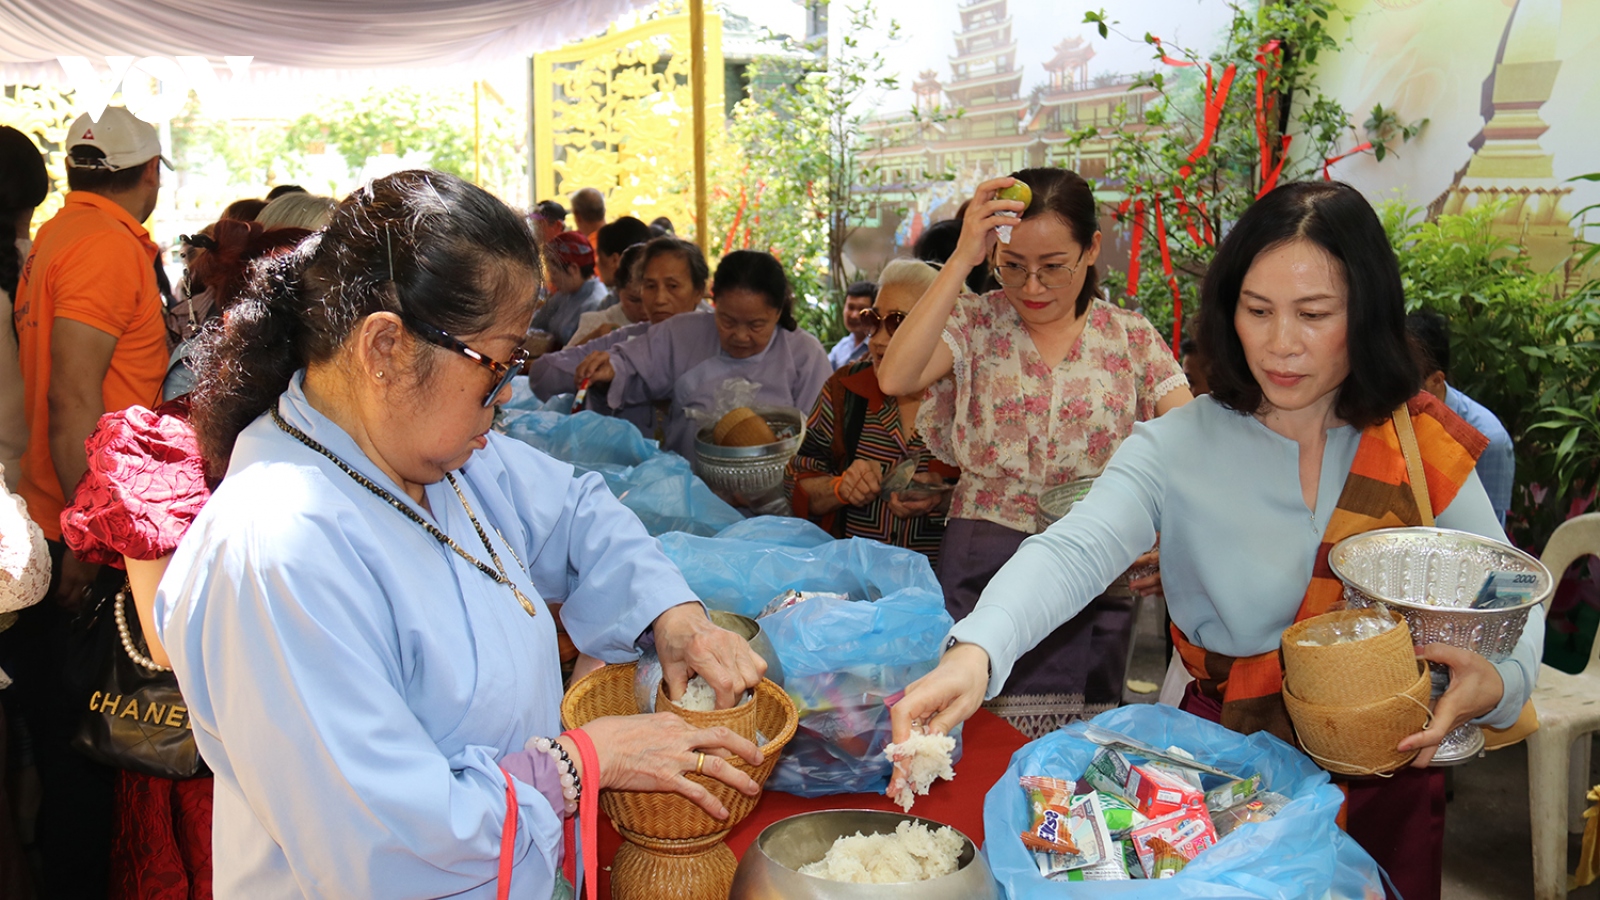 Đại lễ Phật Đản tại Lào - cầu nối gắn kết và gìn giữ bản sắc văn hóa Việt